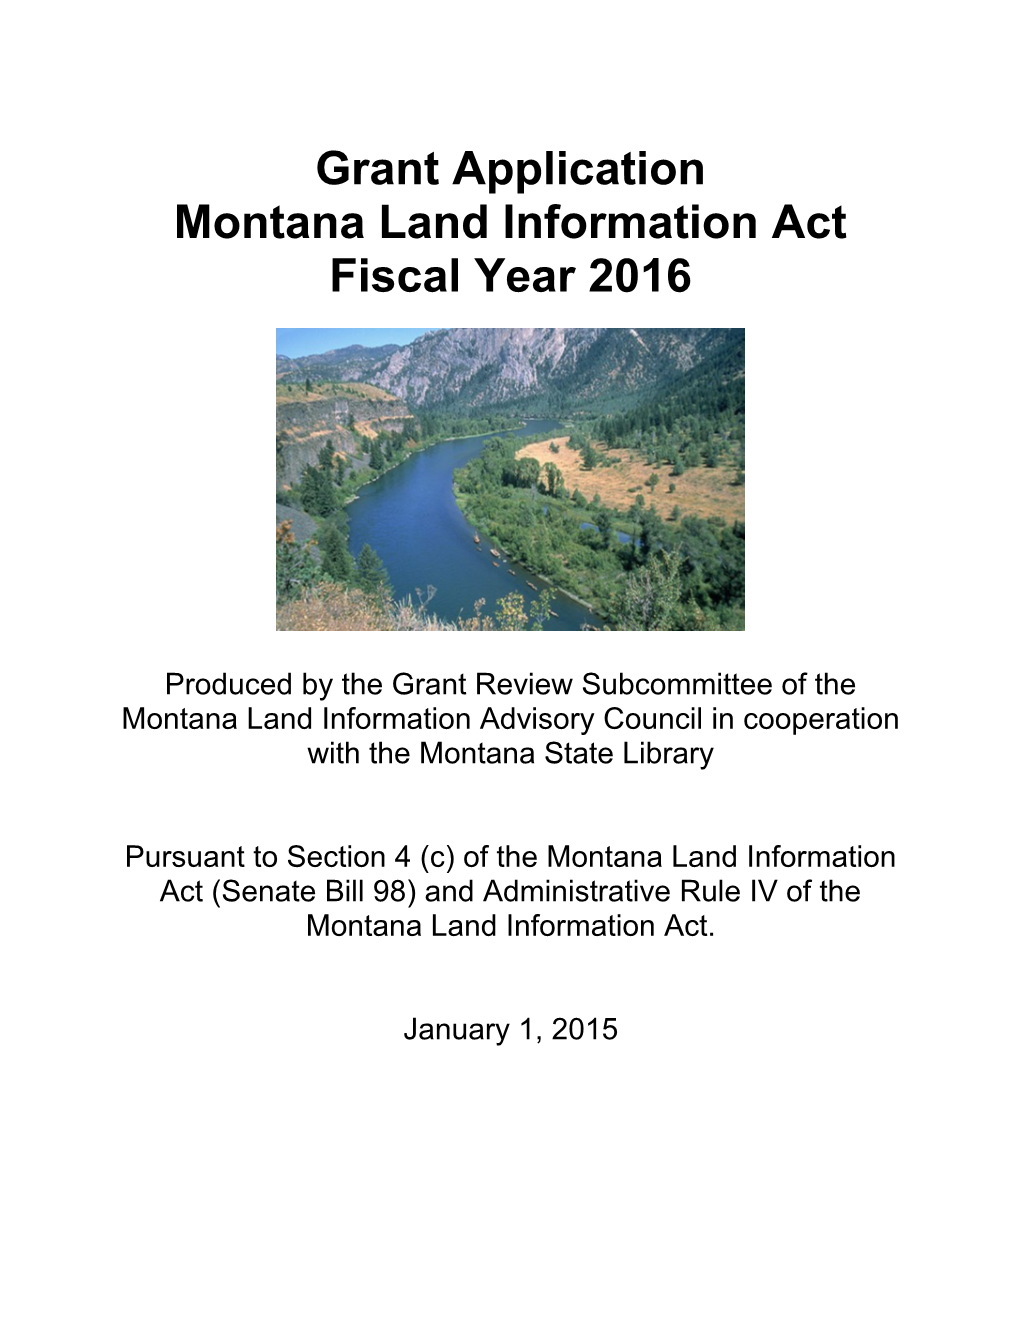 Montana Land Information Plan